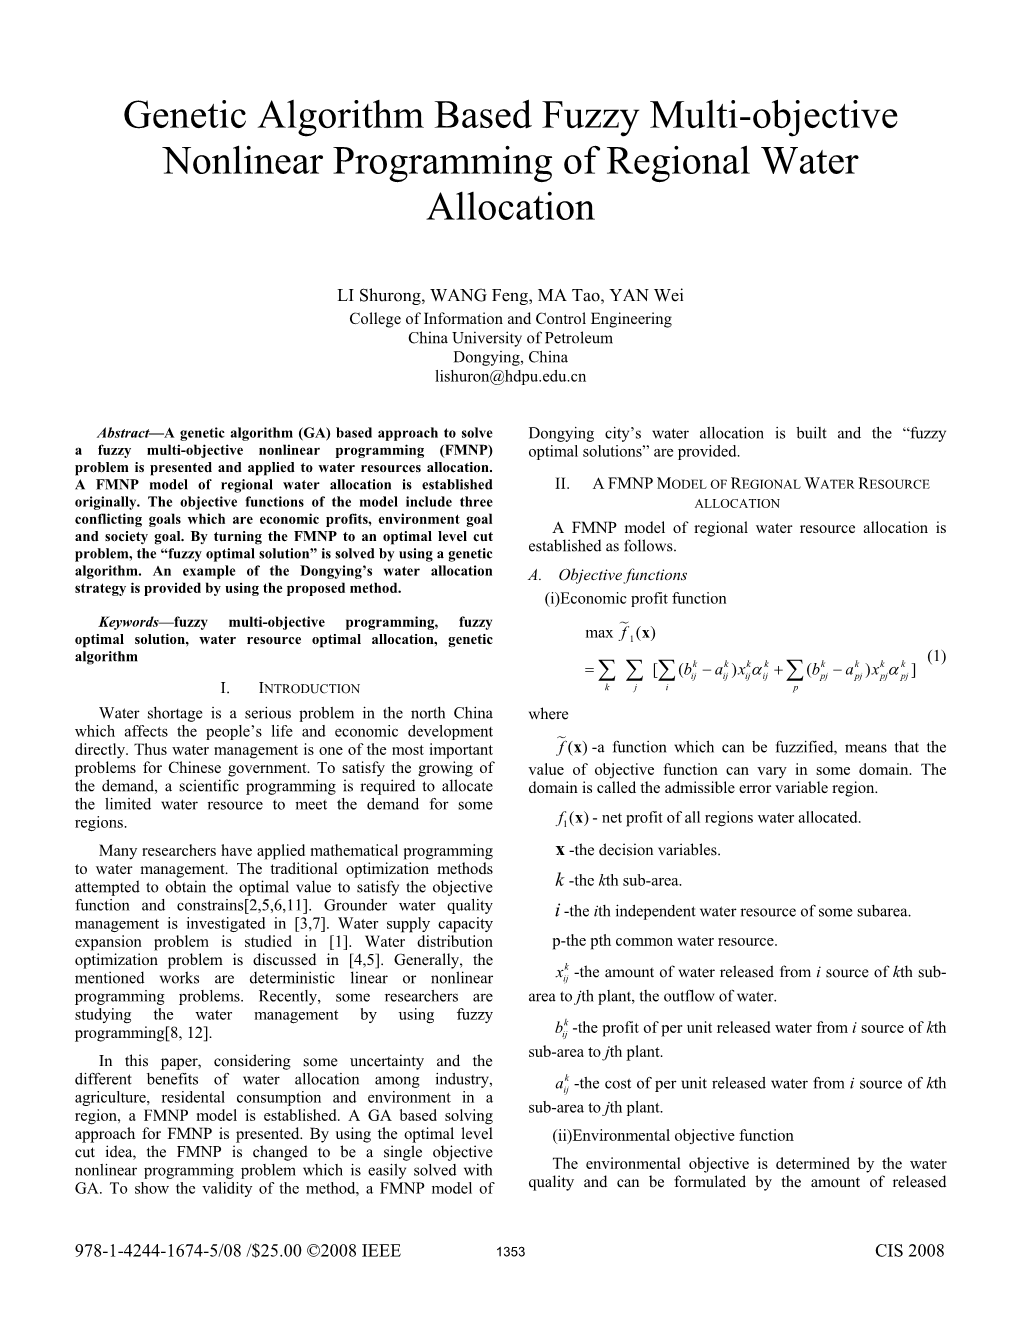 Genetic Algorithm Based Fuzzy Multi-Objective Nonlinear Programming of Regional Water Allocation